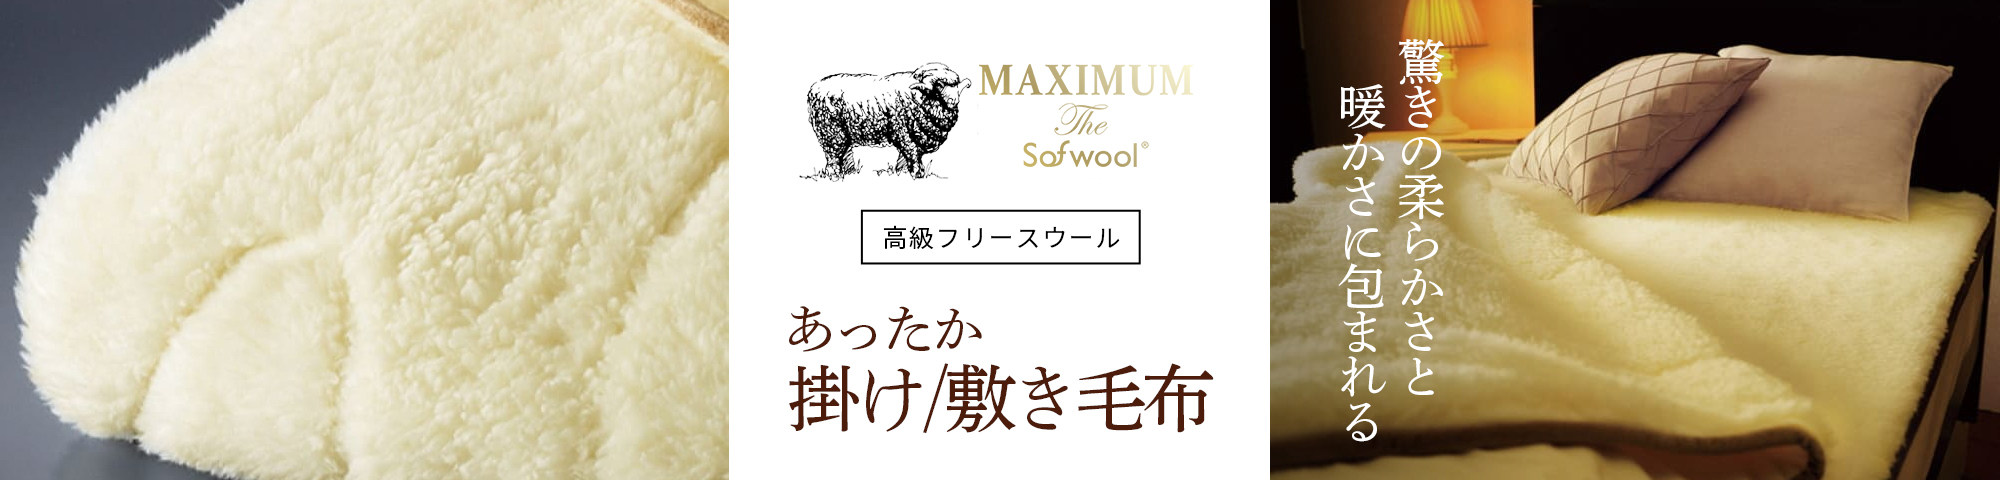 MAXIMUM掛け・敷き毛布PCバナー